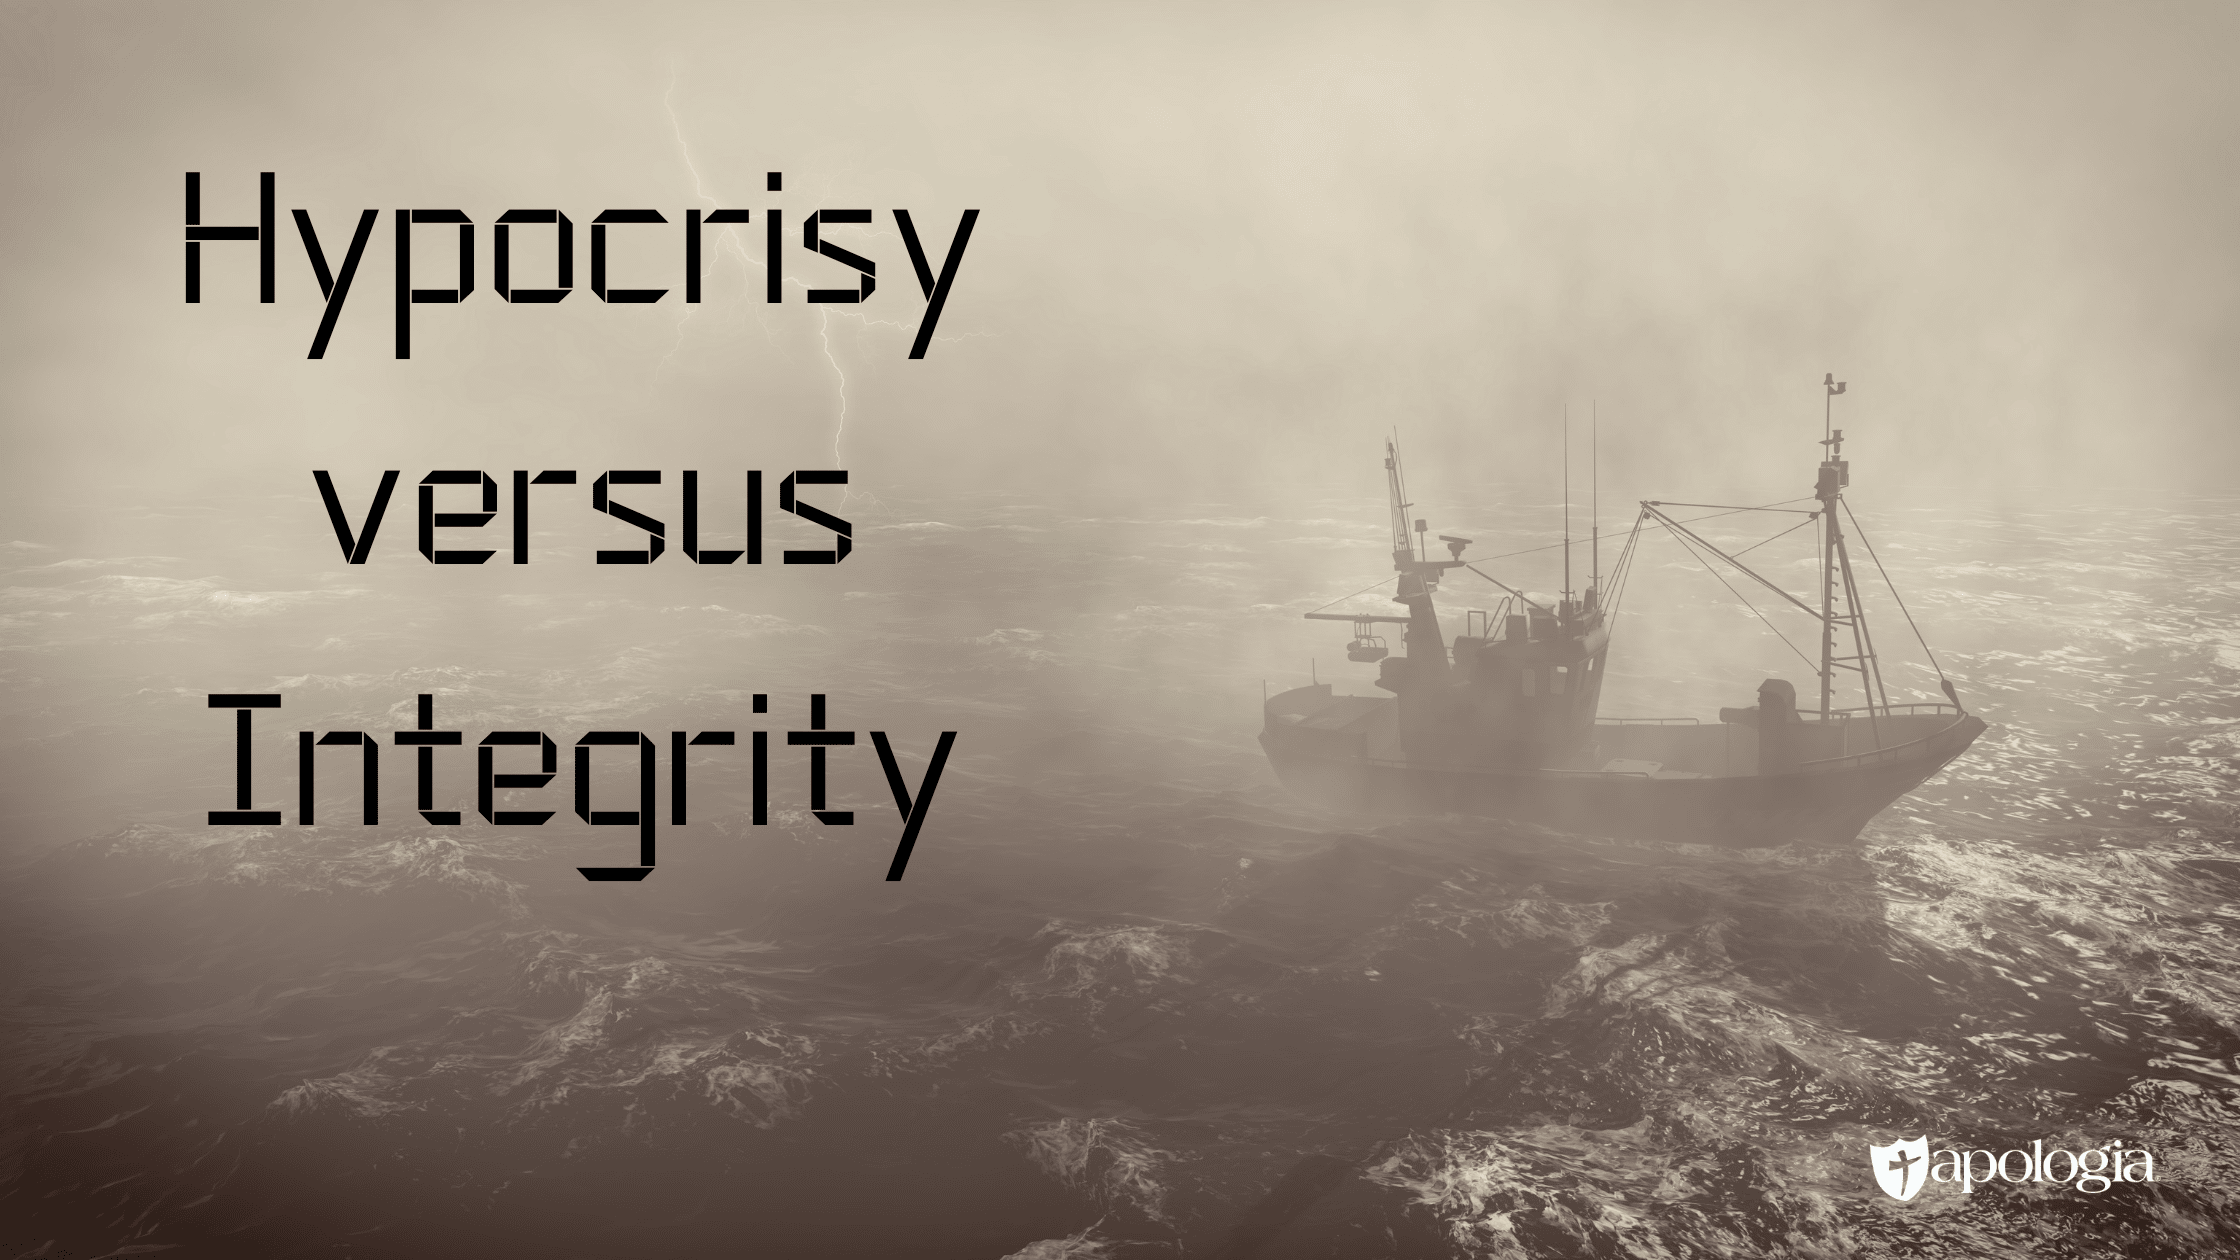 Hypocrisy versus Integrity